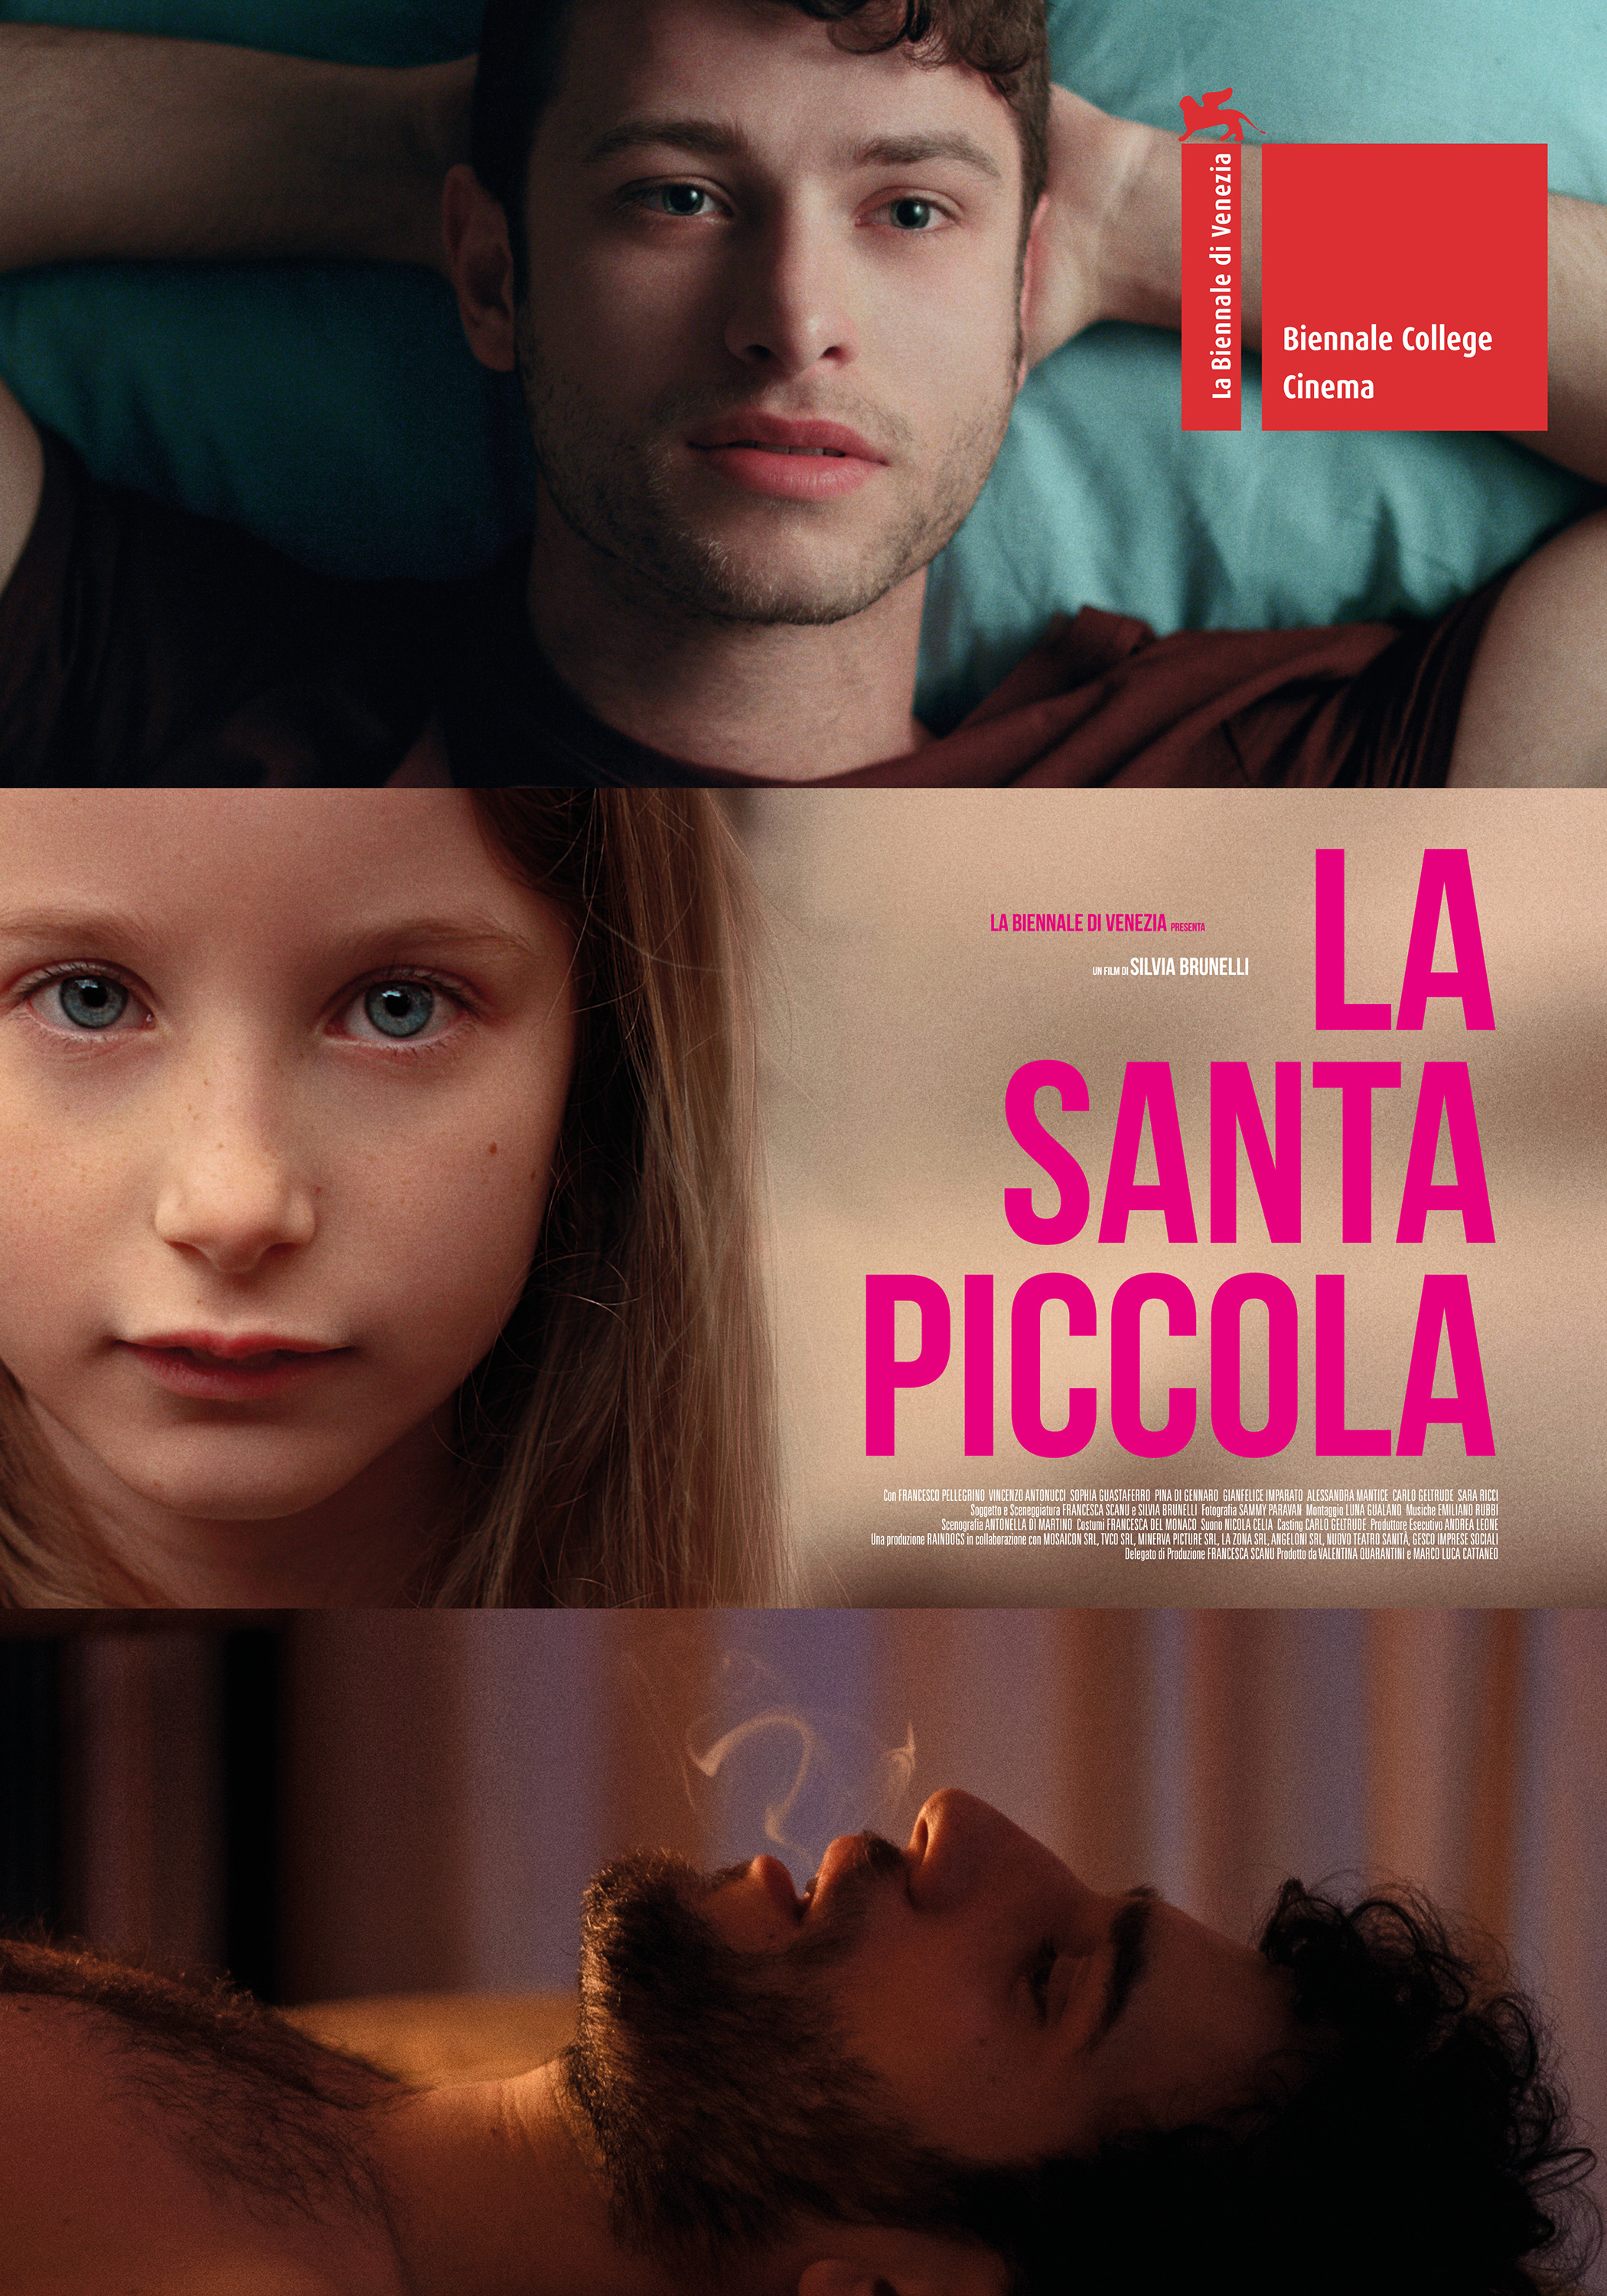 Mega Sized Movie Poster Image for La santa piccola 